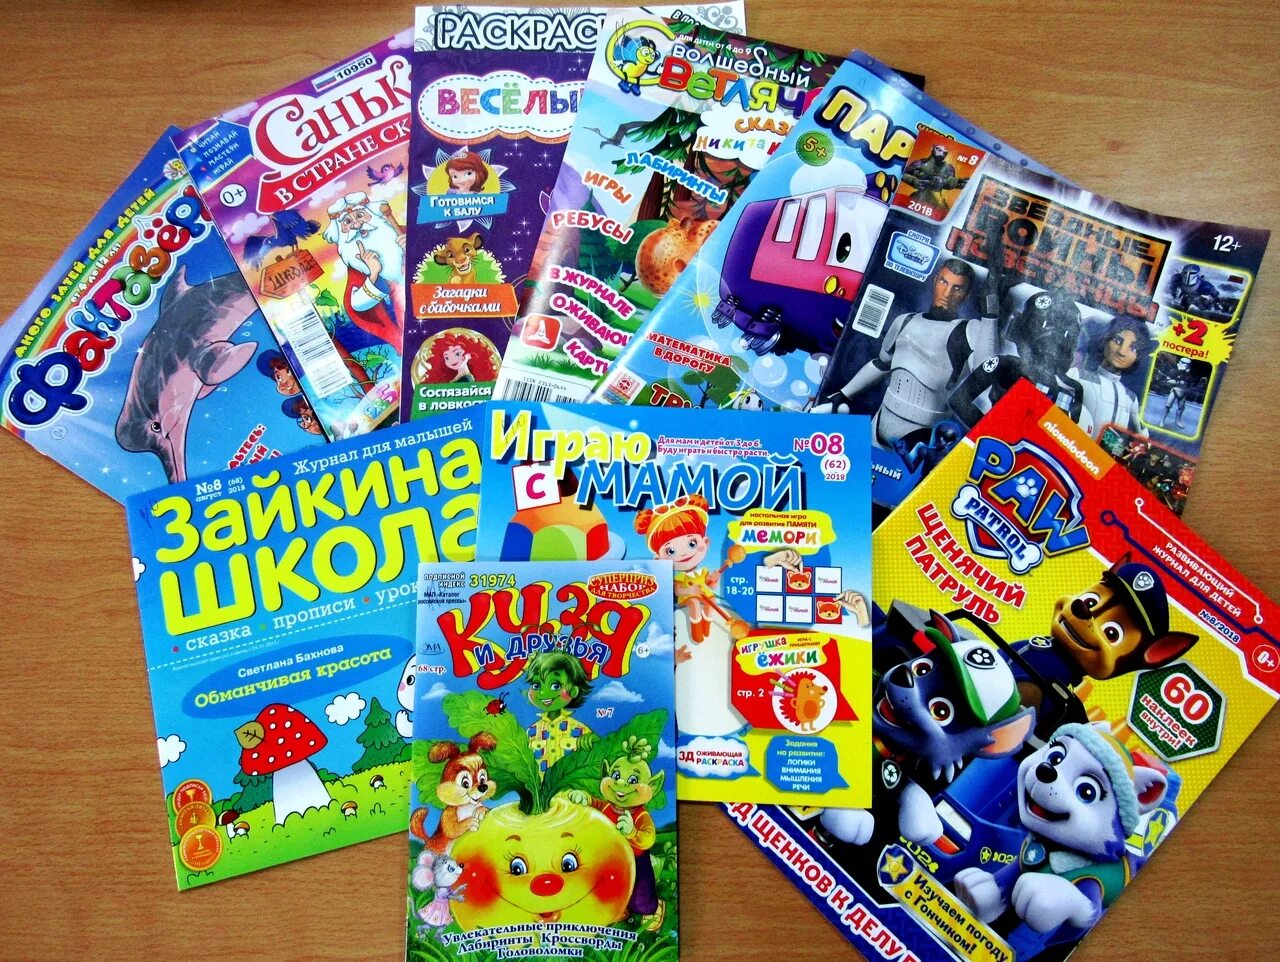 Journal children. Детские журналы. Современные детские журналы. Детские журналы для детей. Периодические издания для детей.